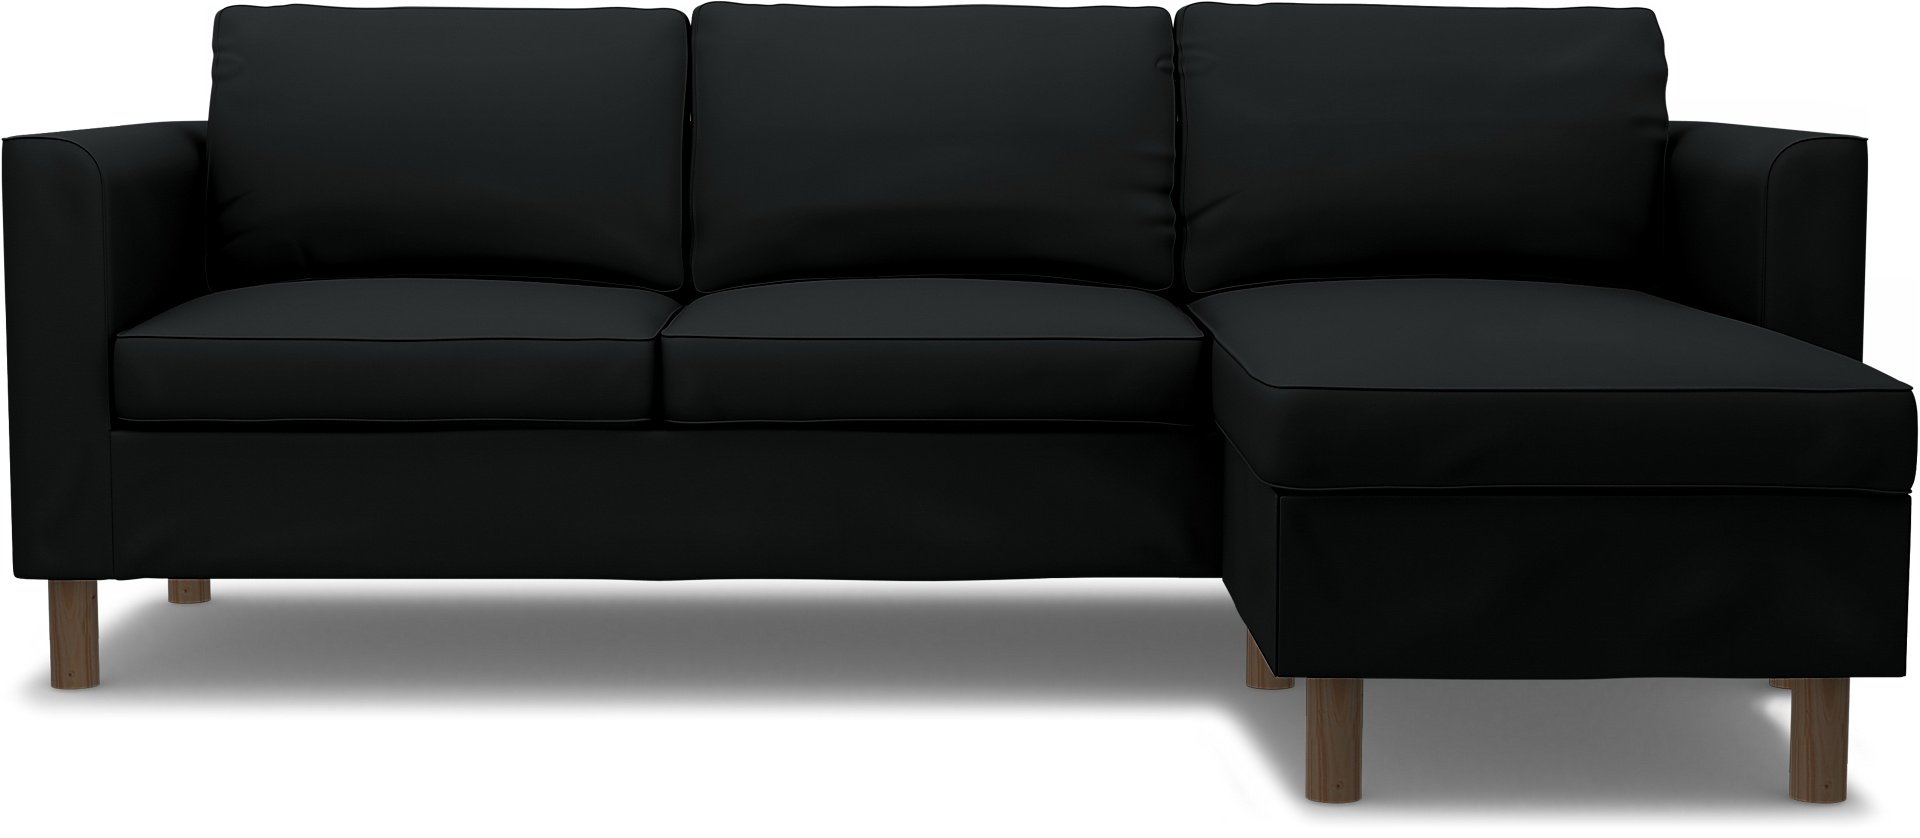 IKEA - Parup 3 Seater with chaise longue, Jet Black, Cotton - Bemz